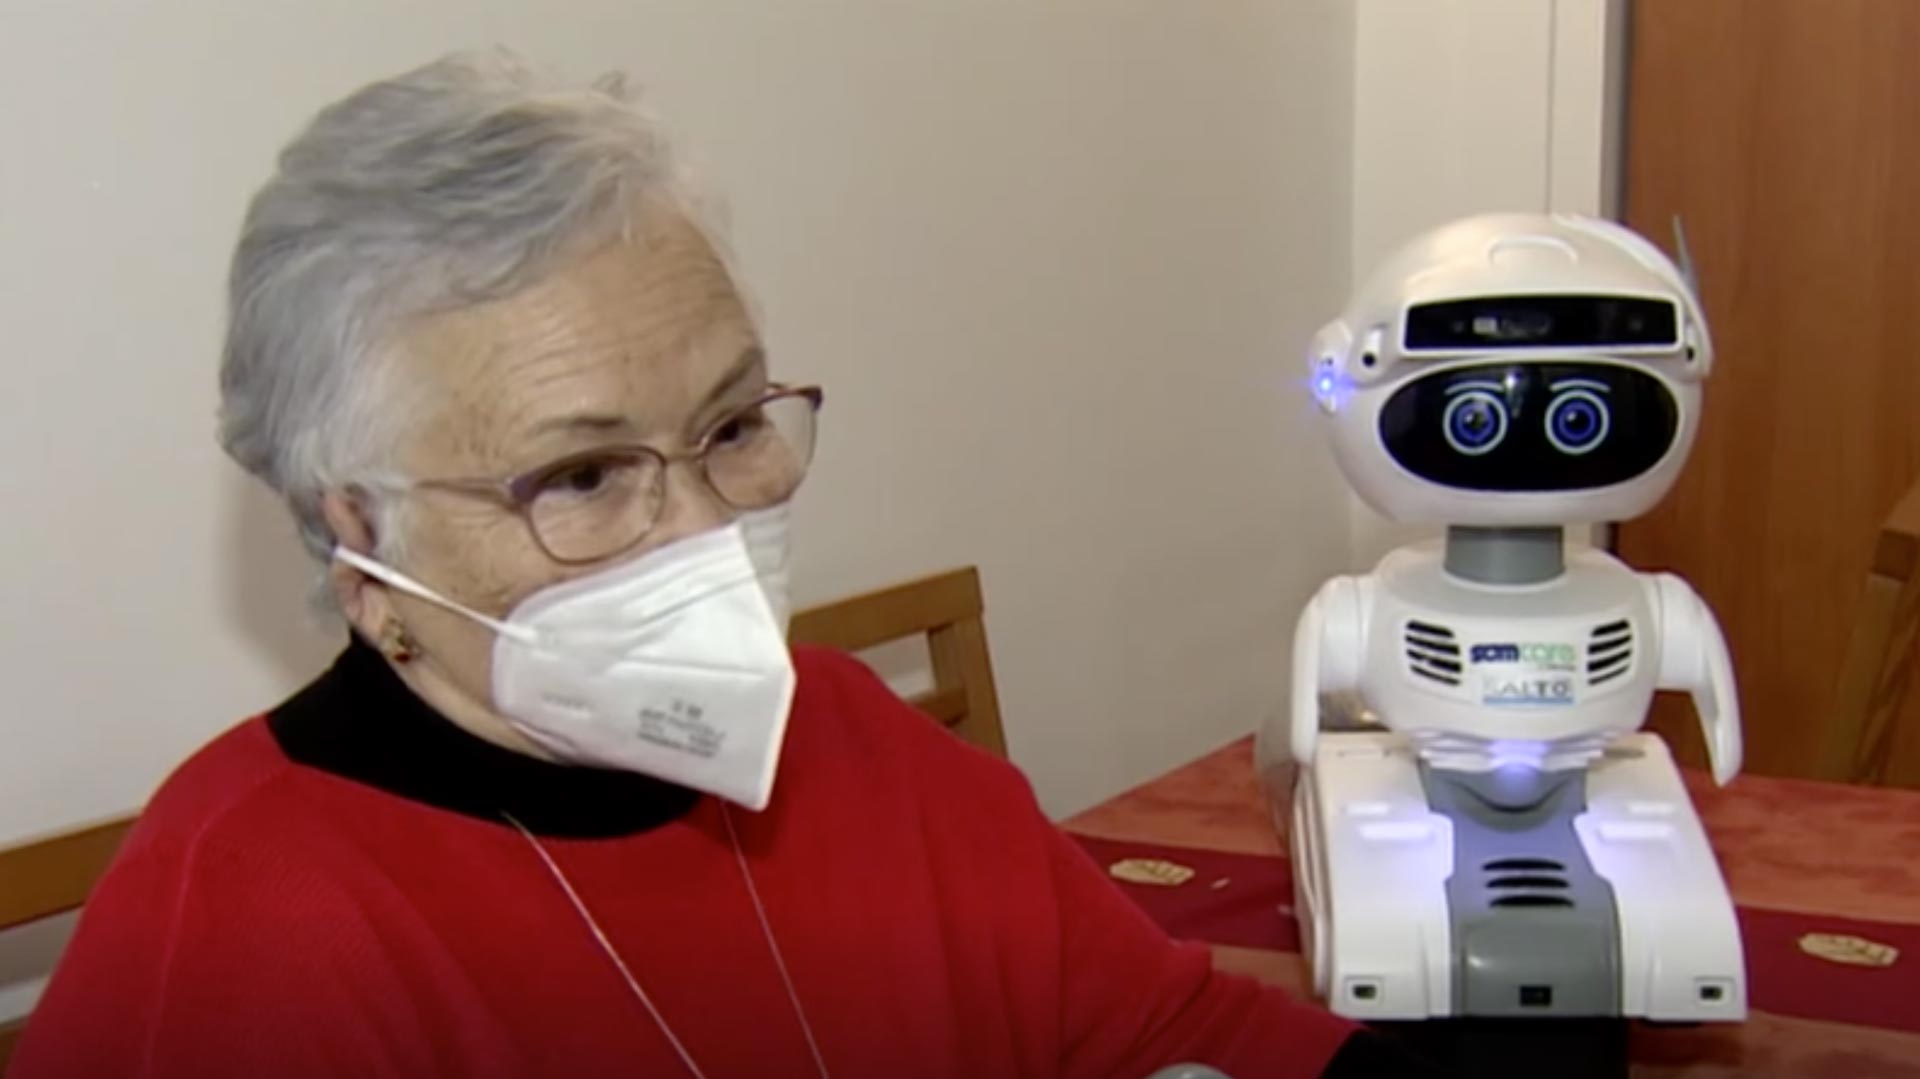 El robot asistencial de Grupo Saltó inicia con personas mayores - Saltó